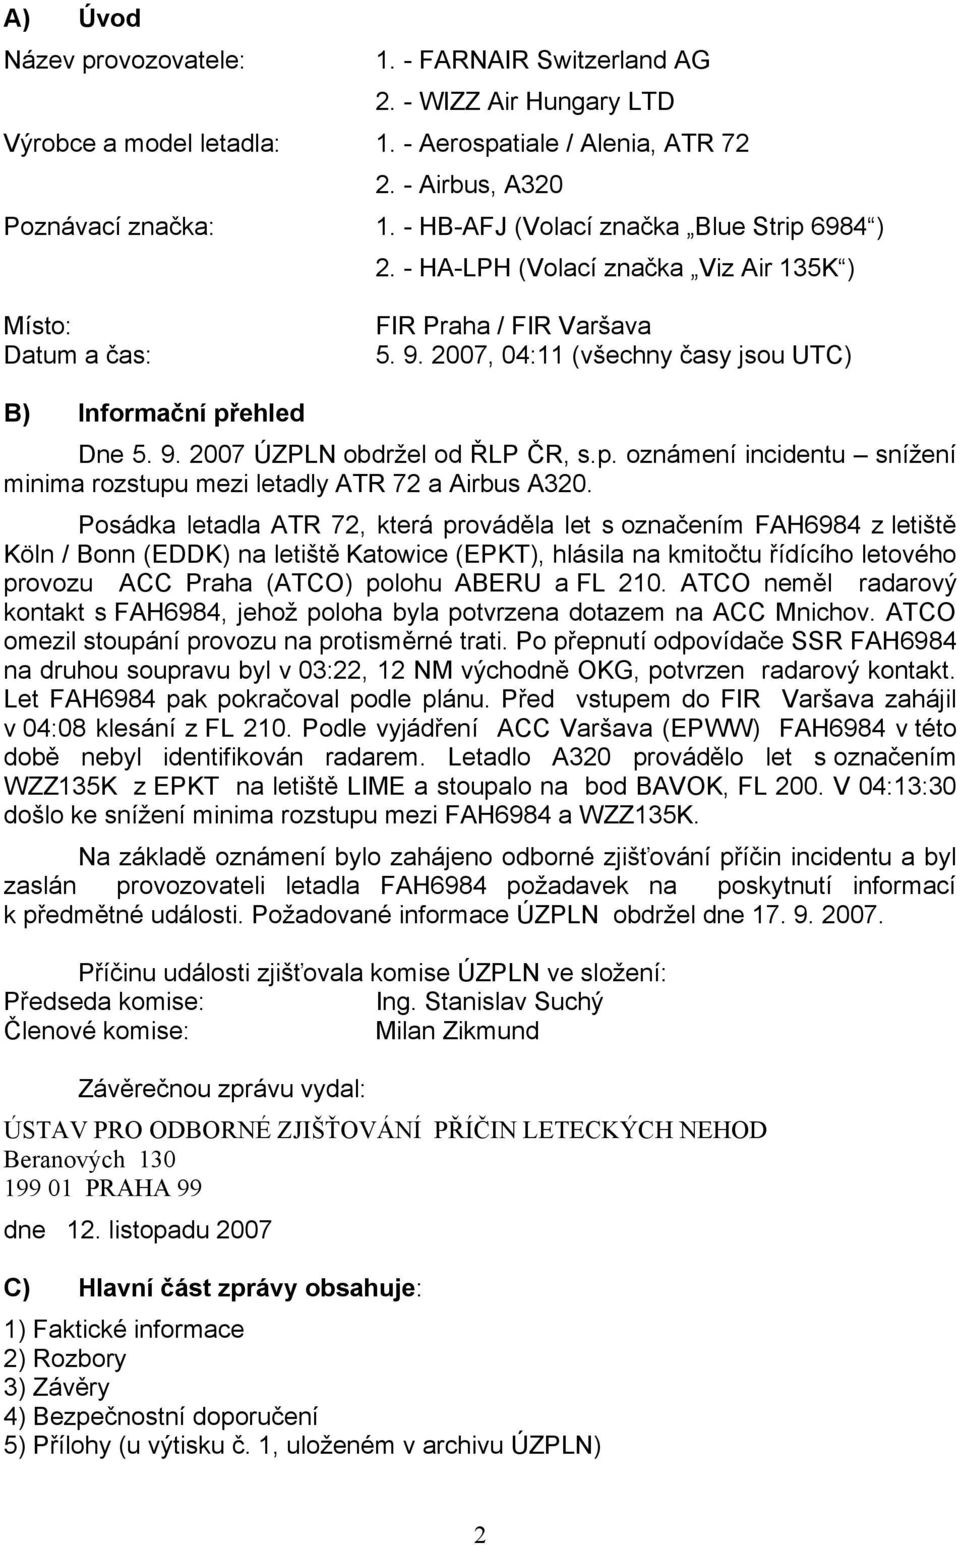 9. 2007 ÚZPLN obdržel od ŘLP ČR, s.p. oznámení incidentu snížení minima rozstupu mezi letadly ATR 72 a Airbus A320.